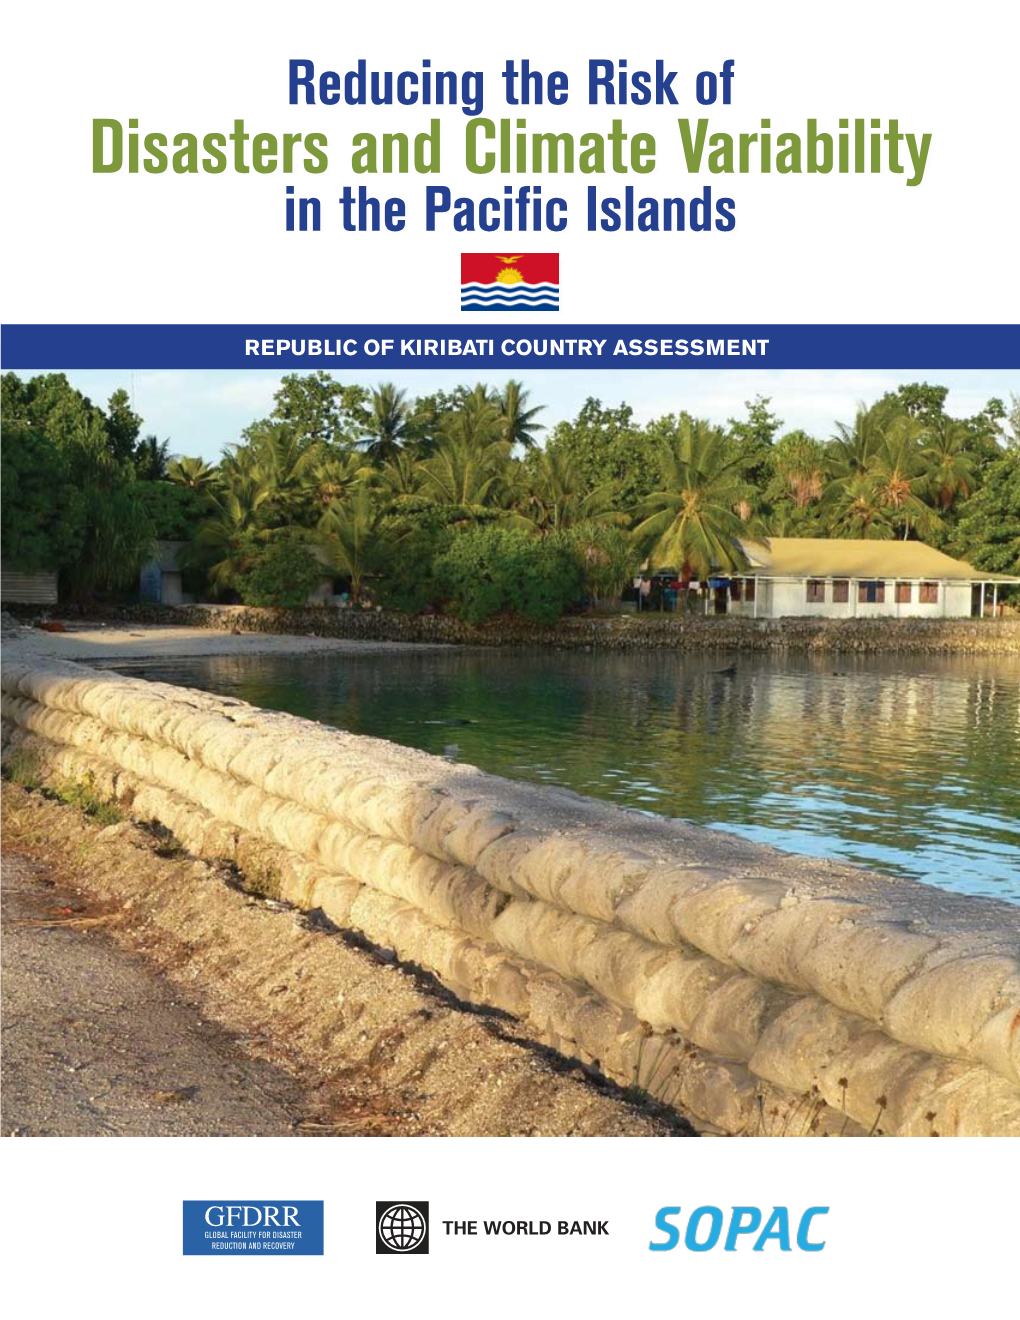 Kiribati Country Assessment